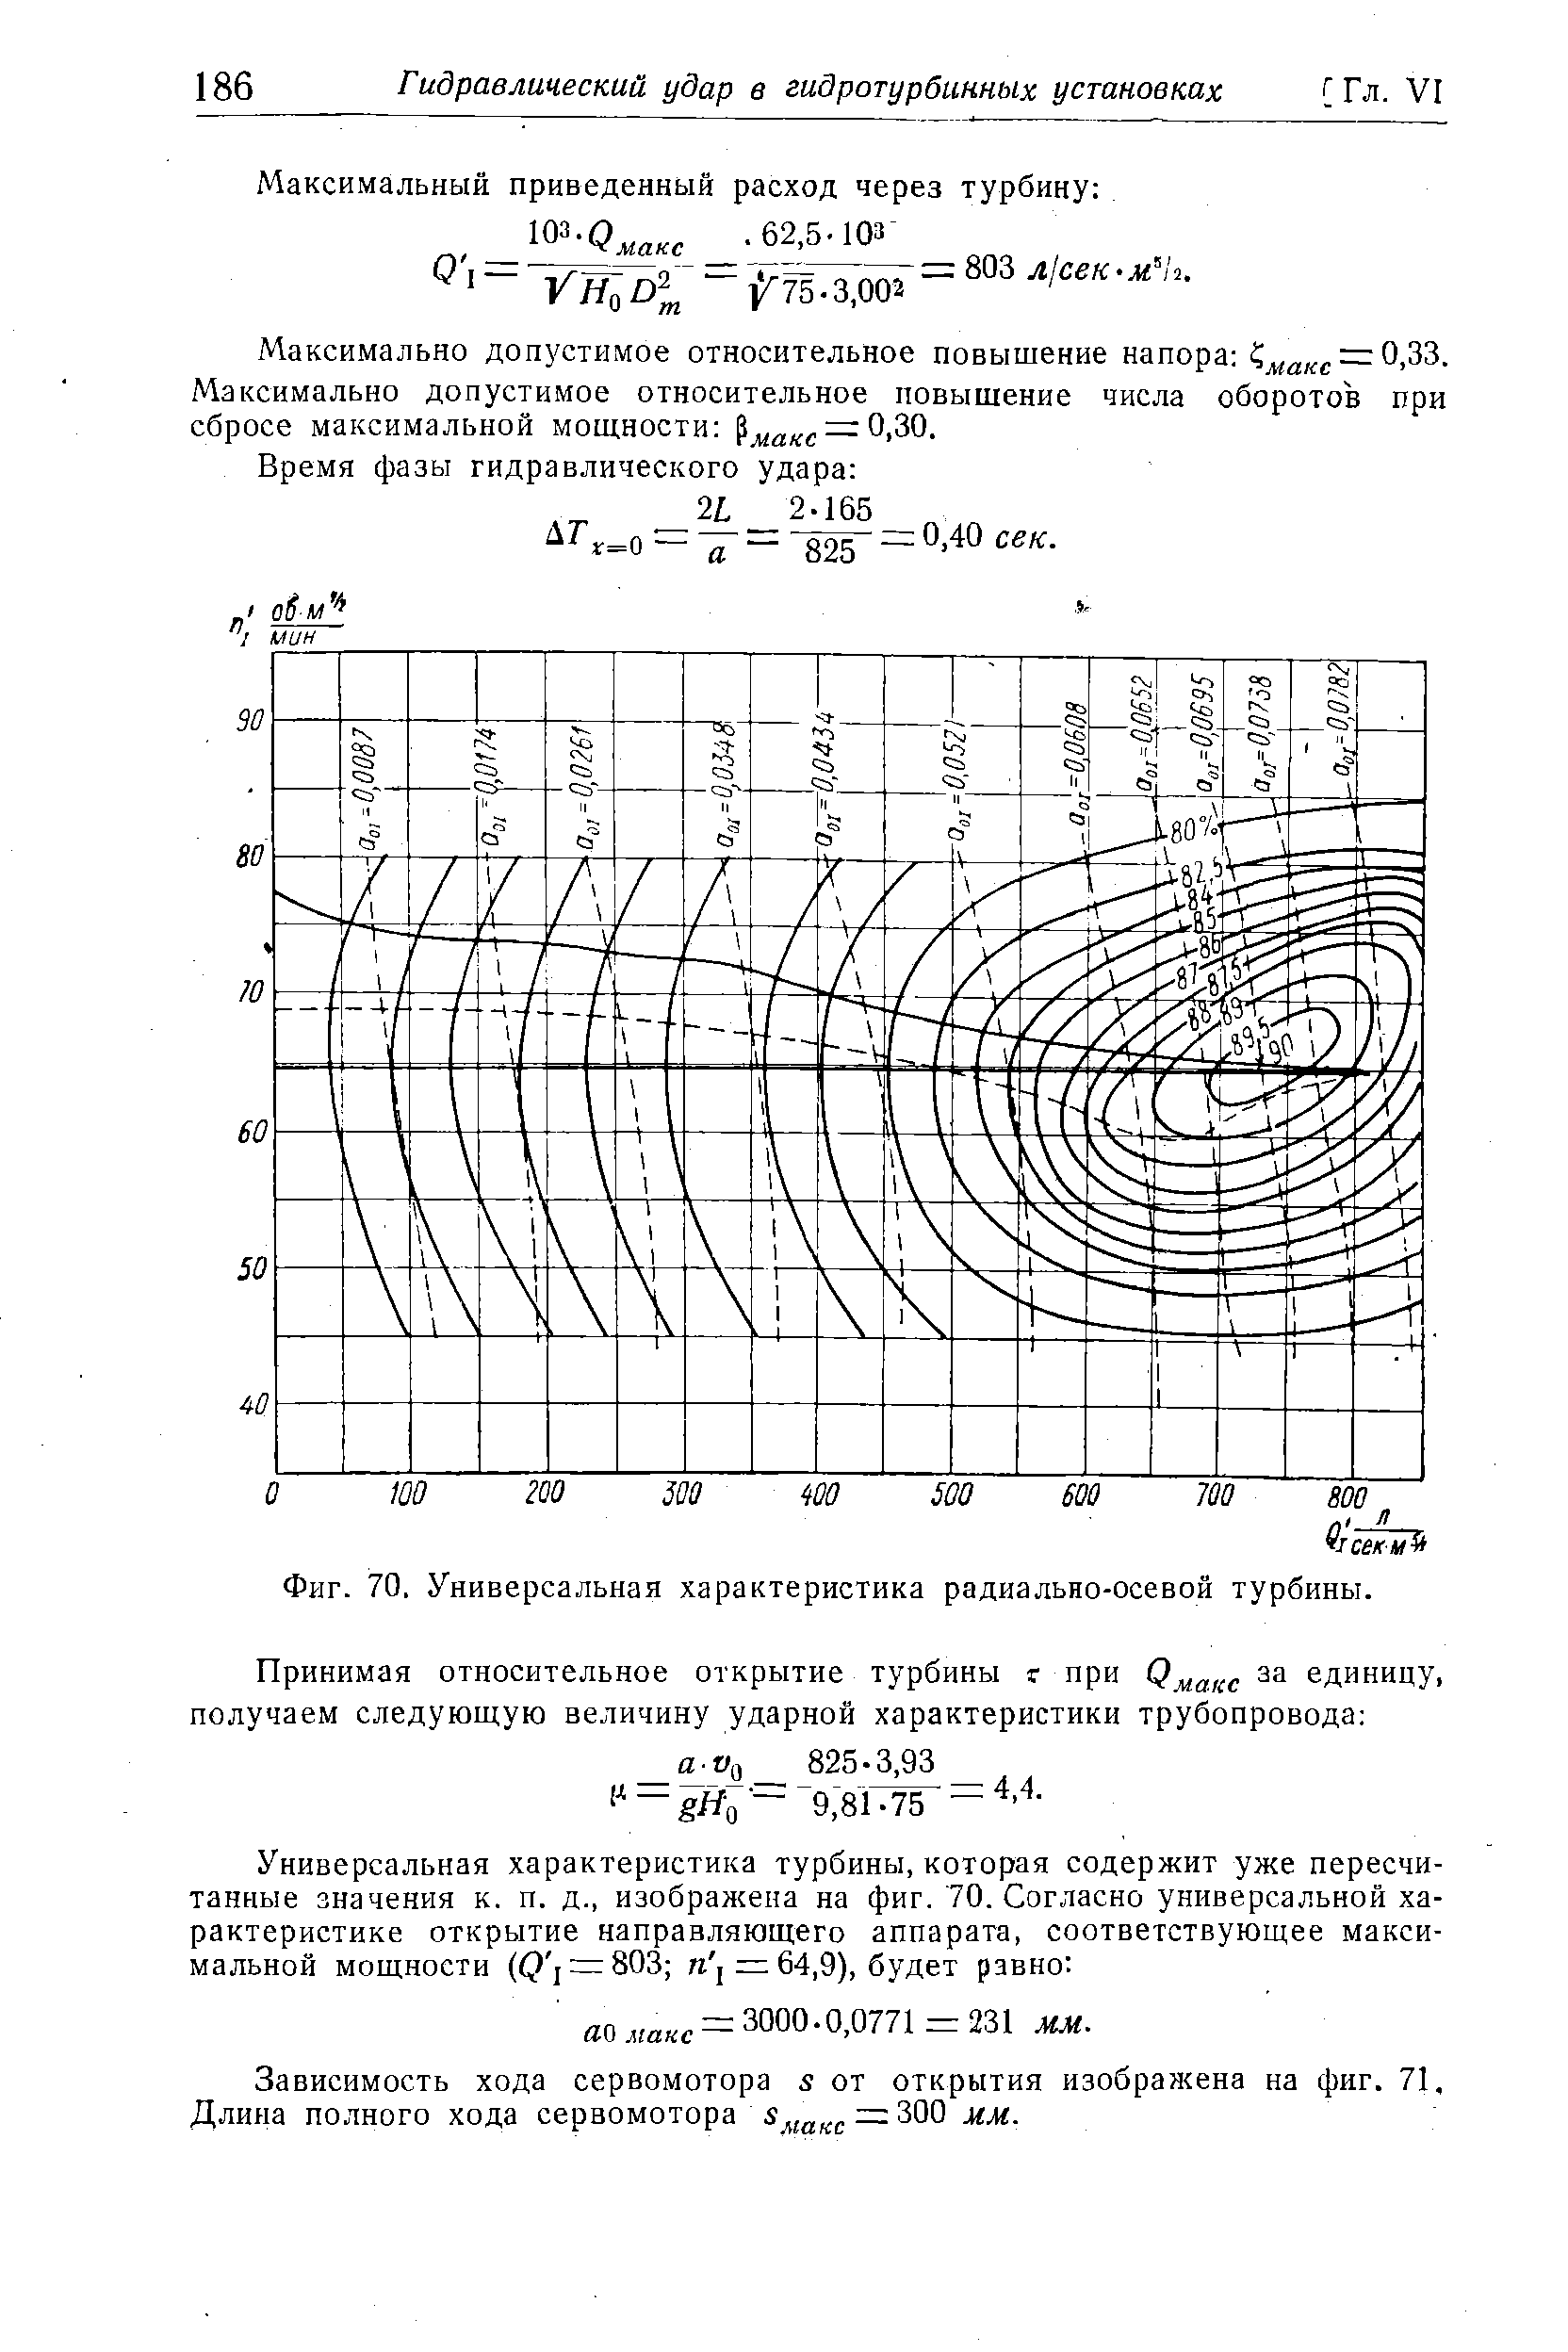 Фиг. 70. <a href="/info/29519">Универсальная характеристика</a> радиально-осевой турбины.
